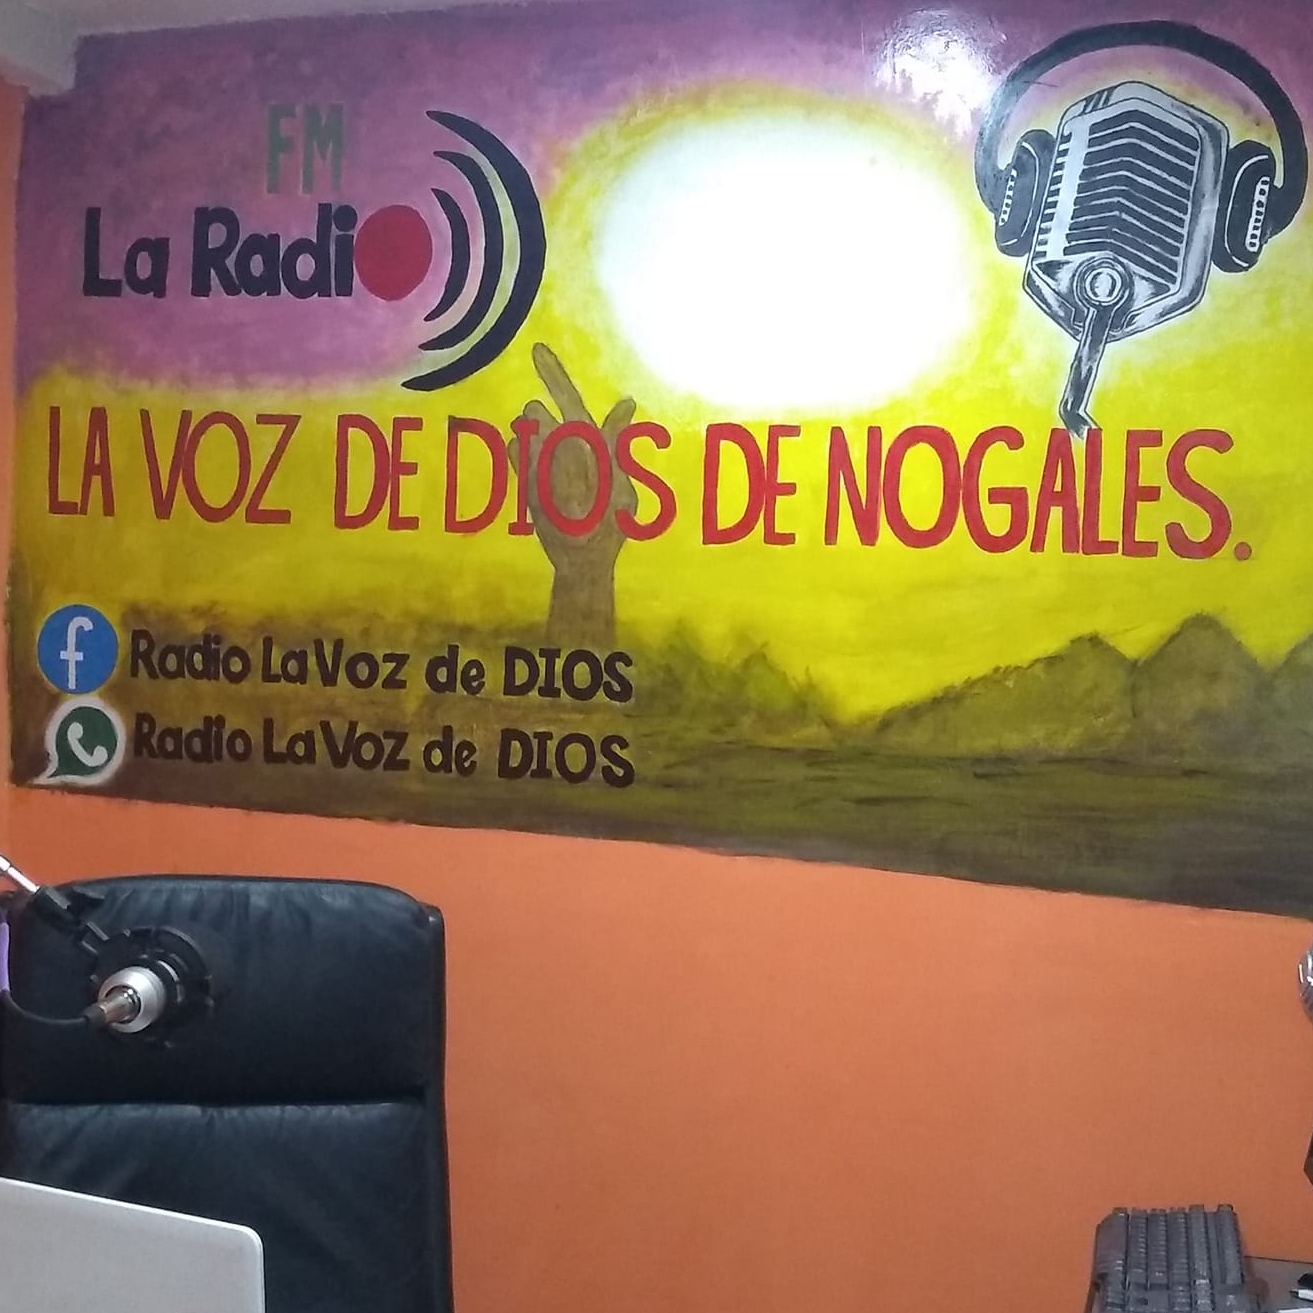 La Radio La Voz de Dios de Nogales